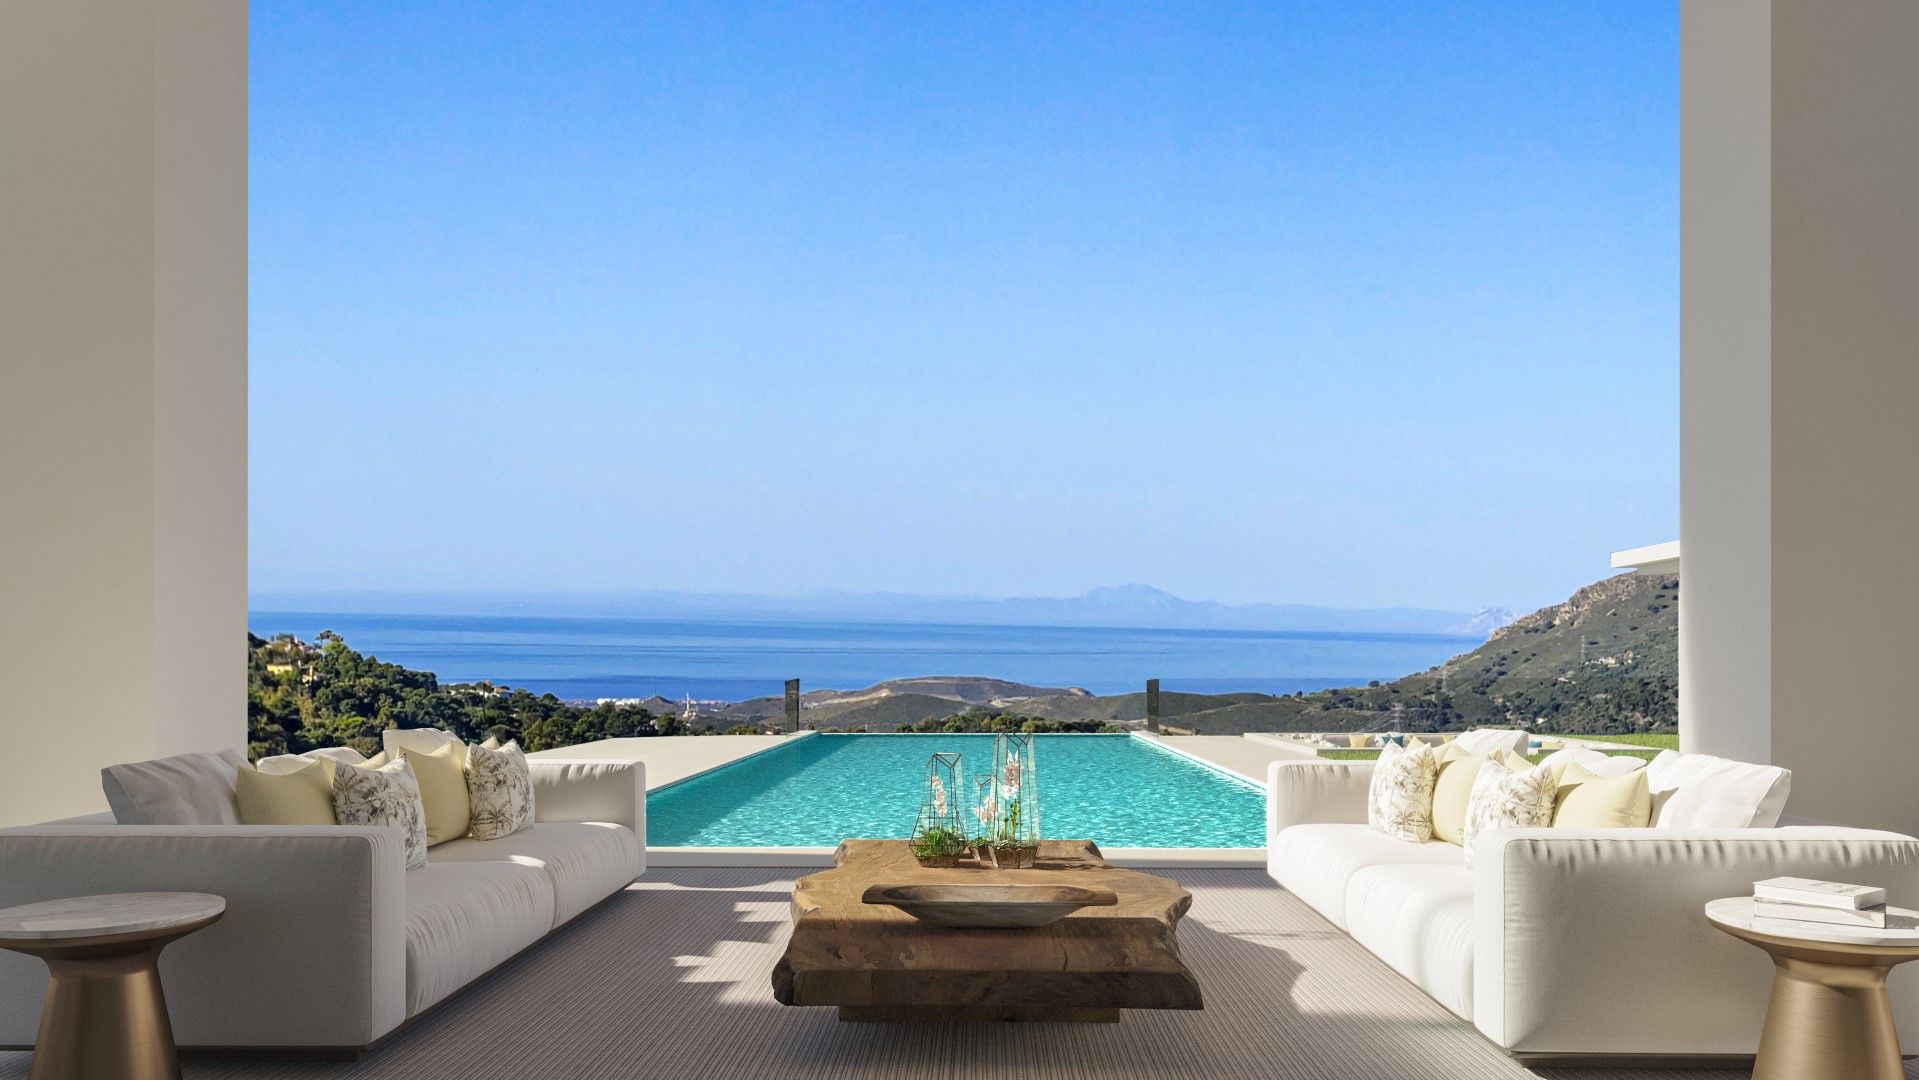 Off plan project of a luxury villa with astonishing views in La Zagaleta | Engel & Völkers Marbella